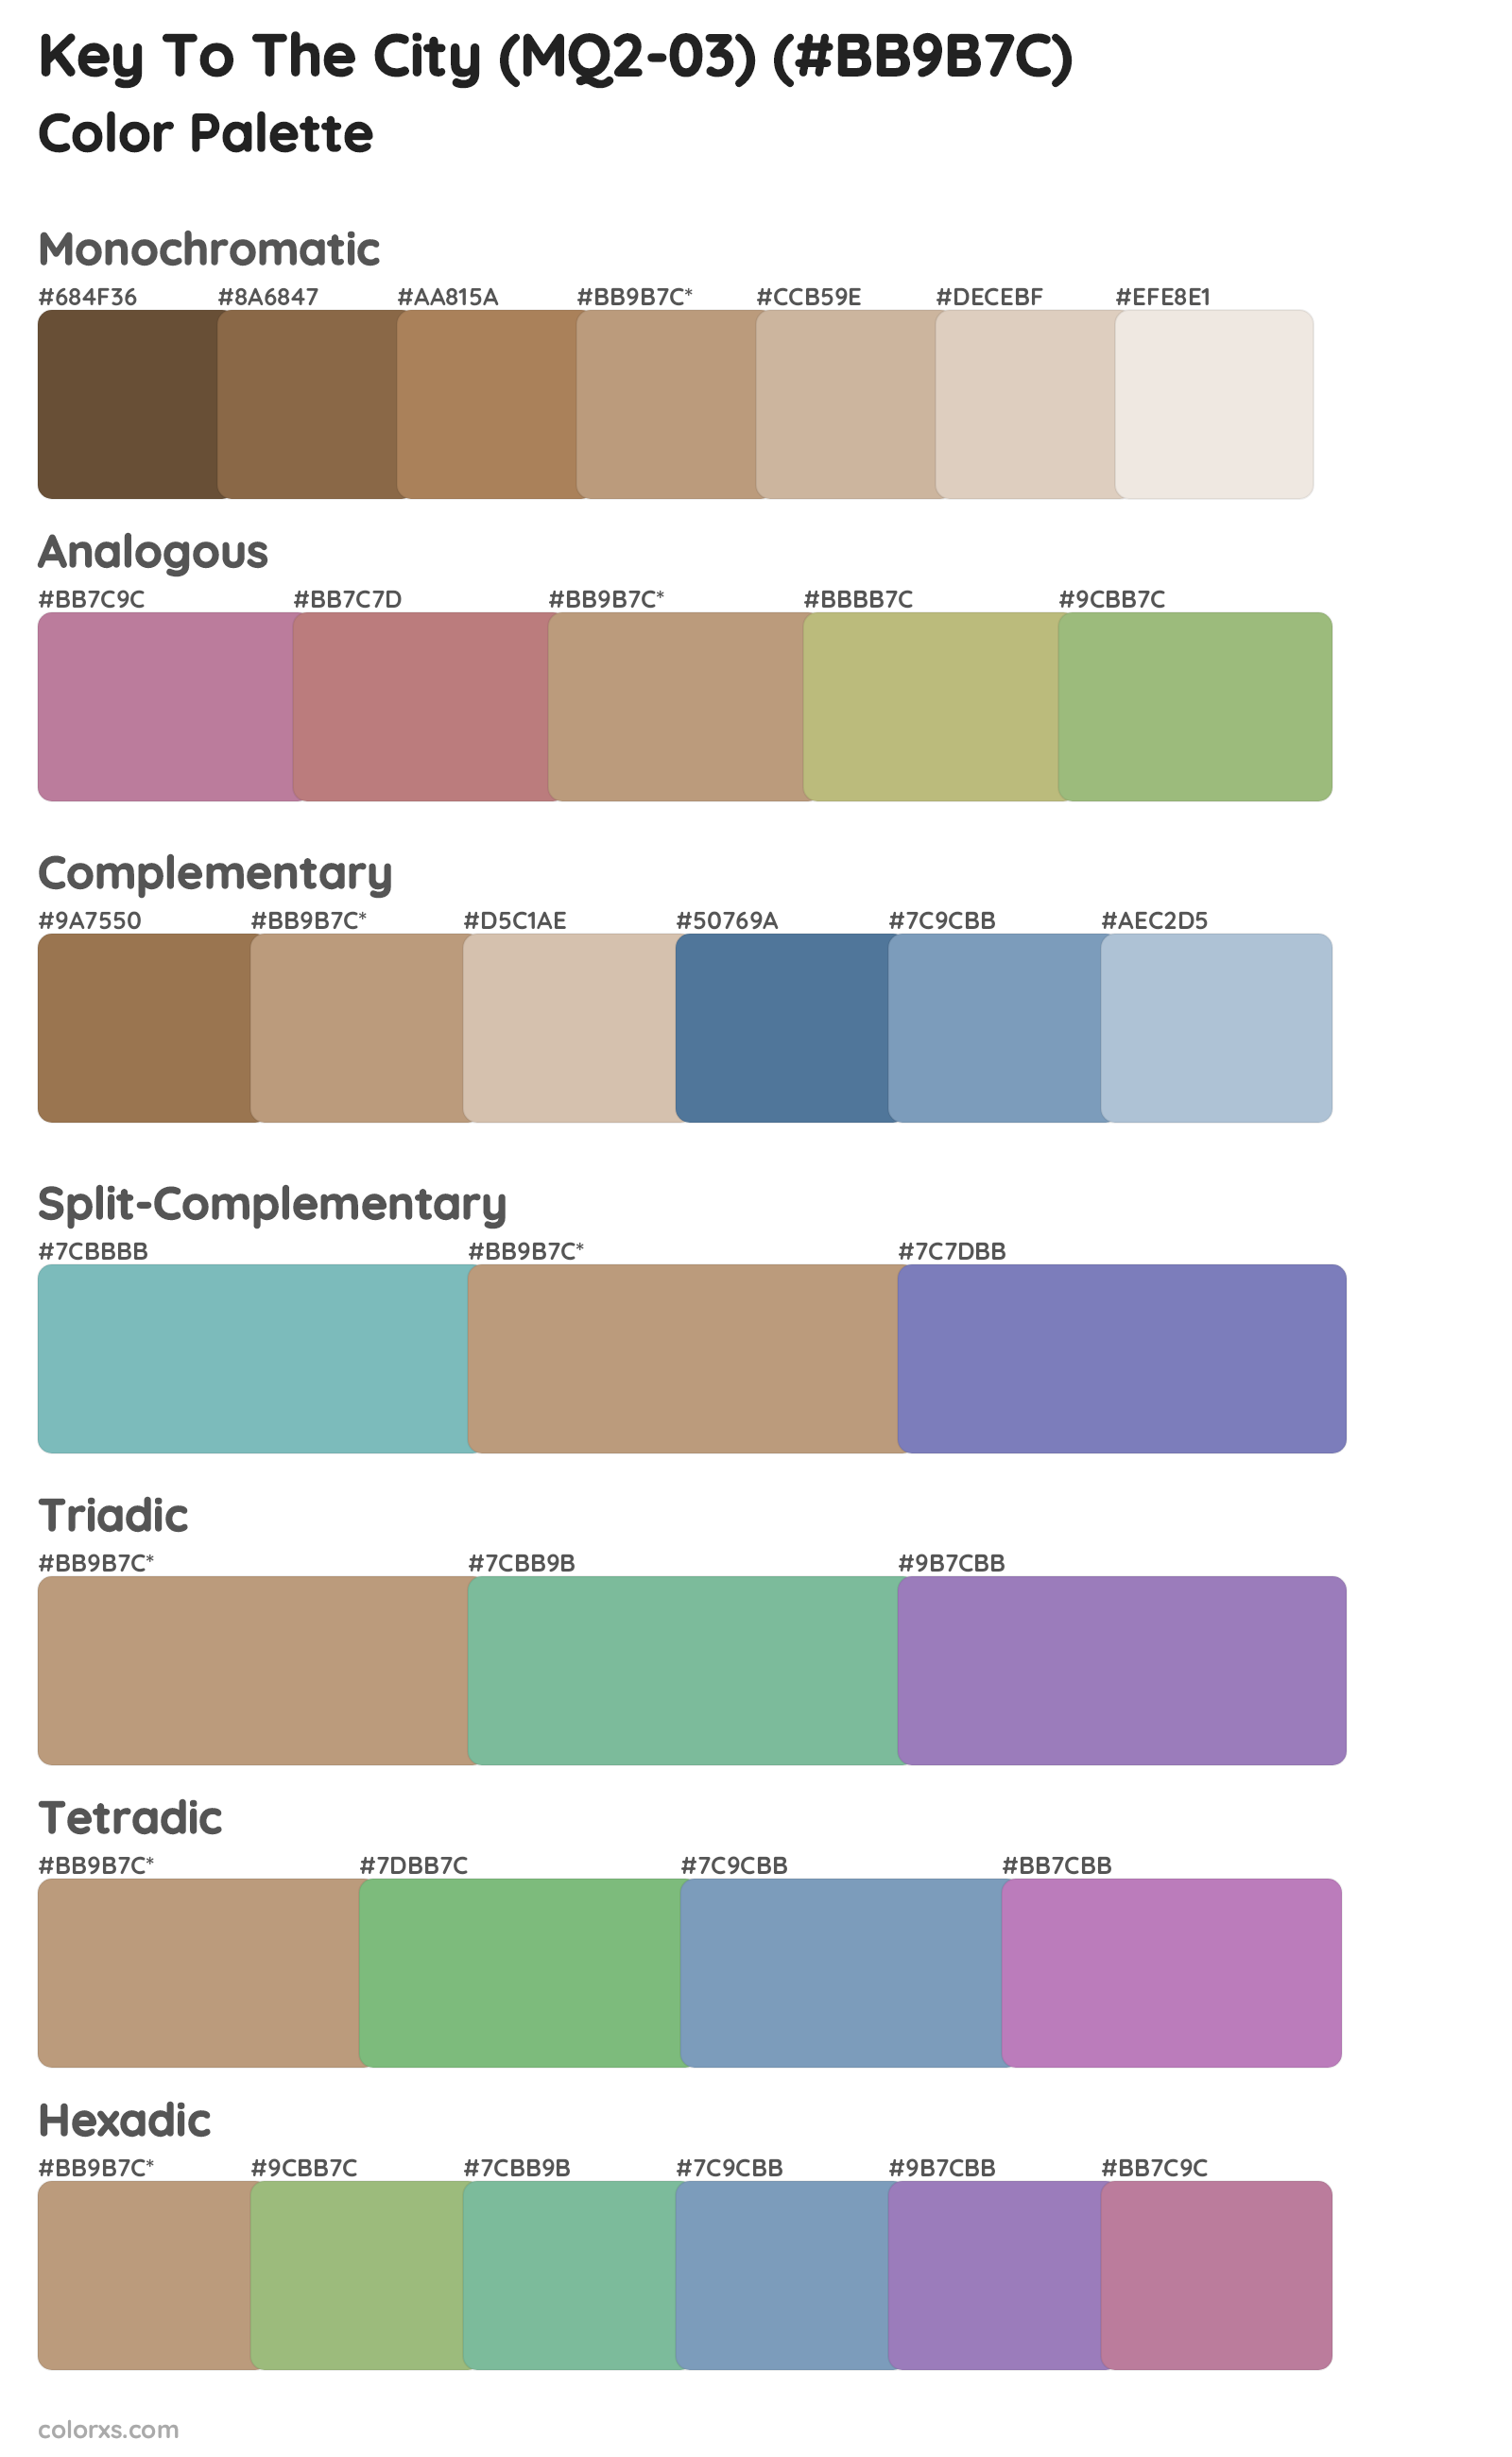 Key To The City (MQ2-03) Color Scheme Palettes